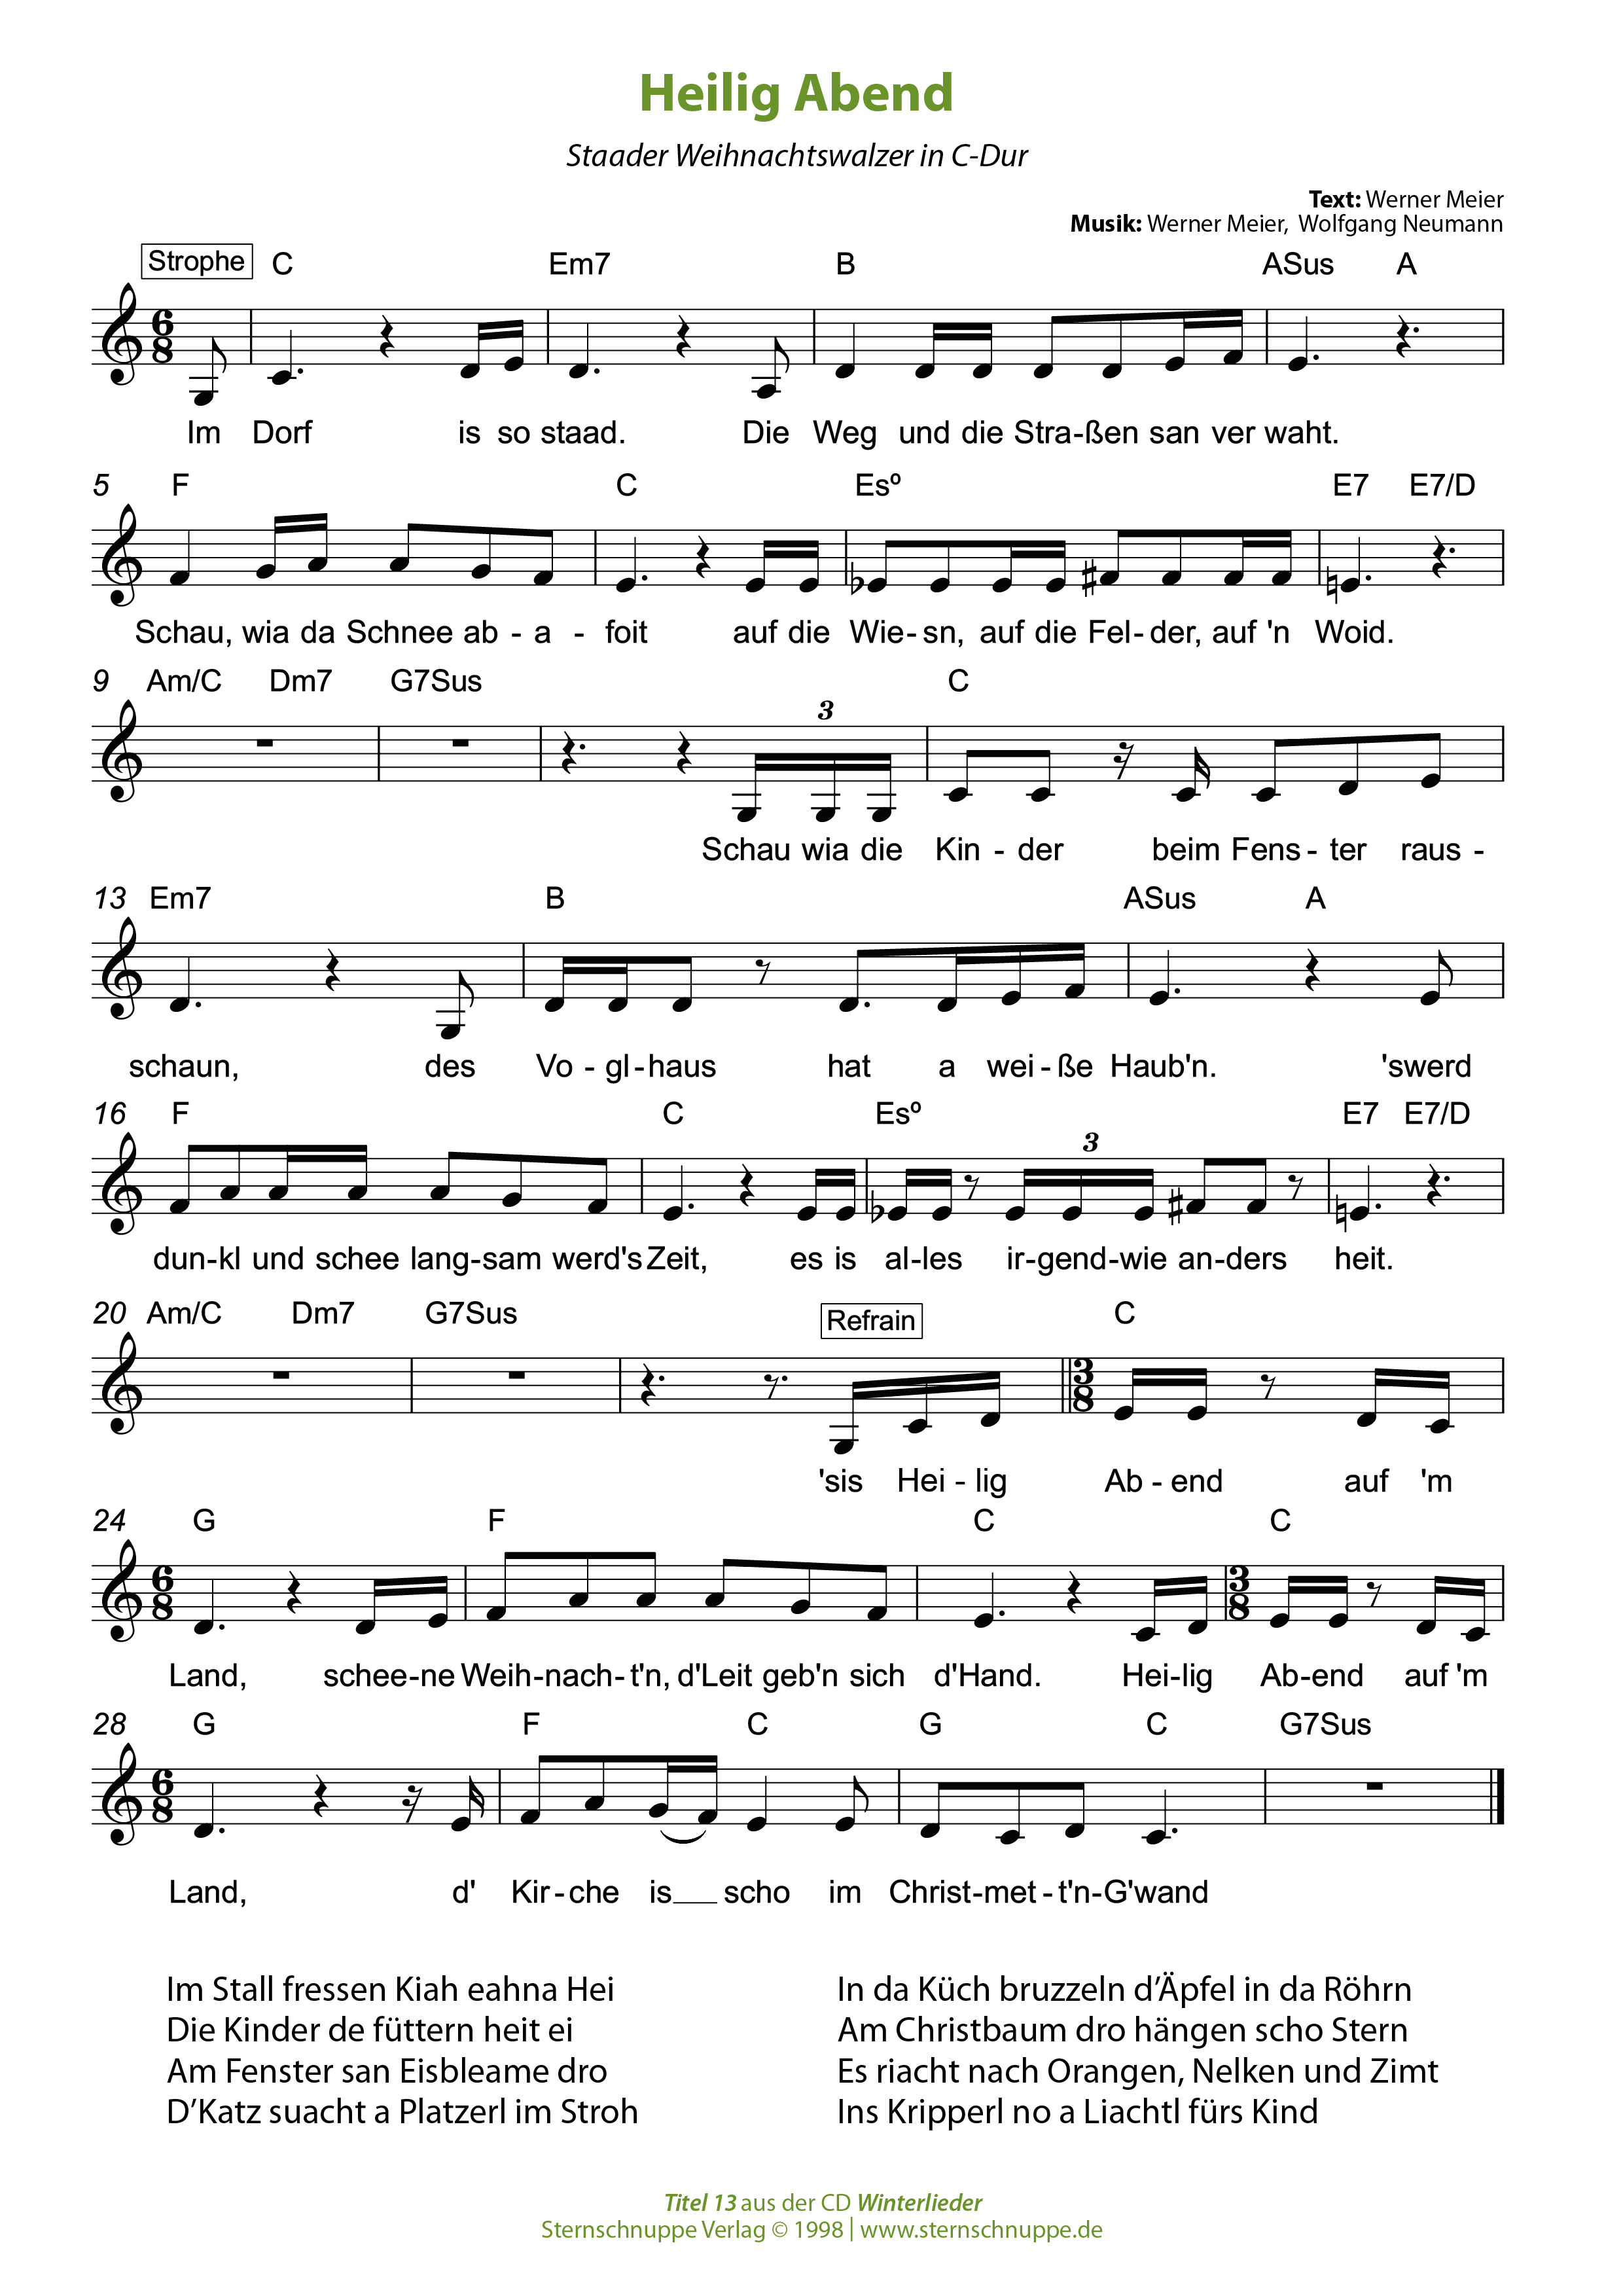 Liedtext, Akkorde und Noten vom Kinderlied Heilig Abend